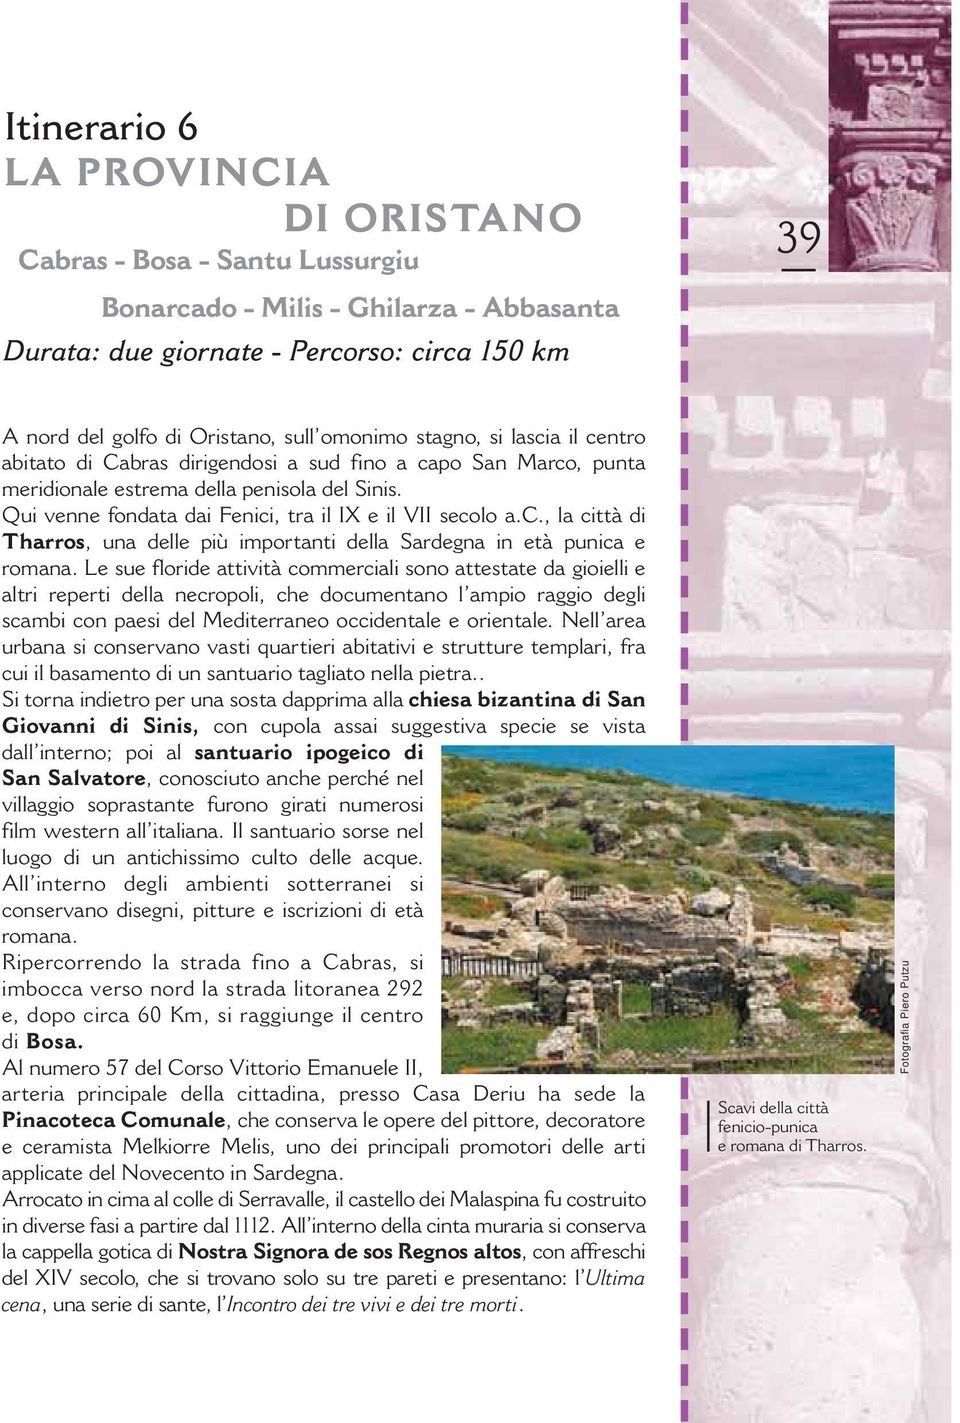 Qui venne fondata dai Fenici, tra il IX e il VII secolo a.c., la città di Tharros, una delle più importanti della Sardegna in età punica e romana.